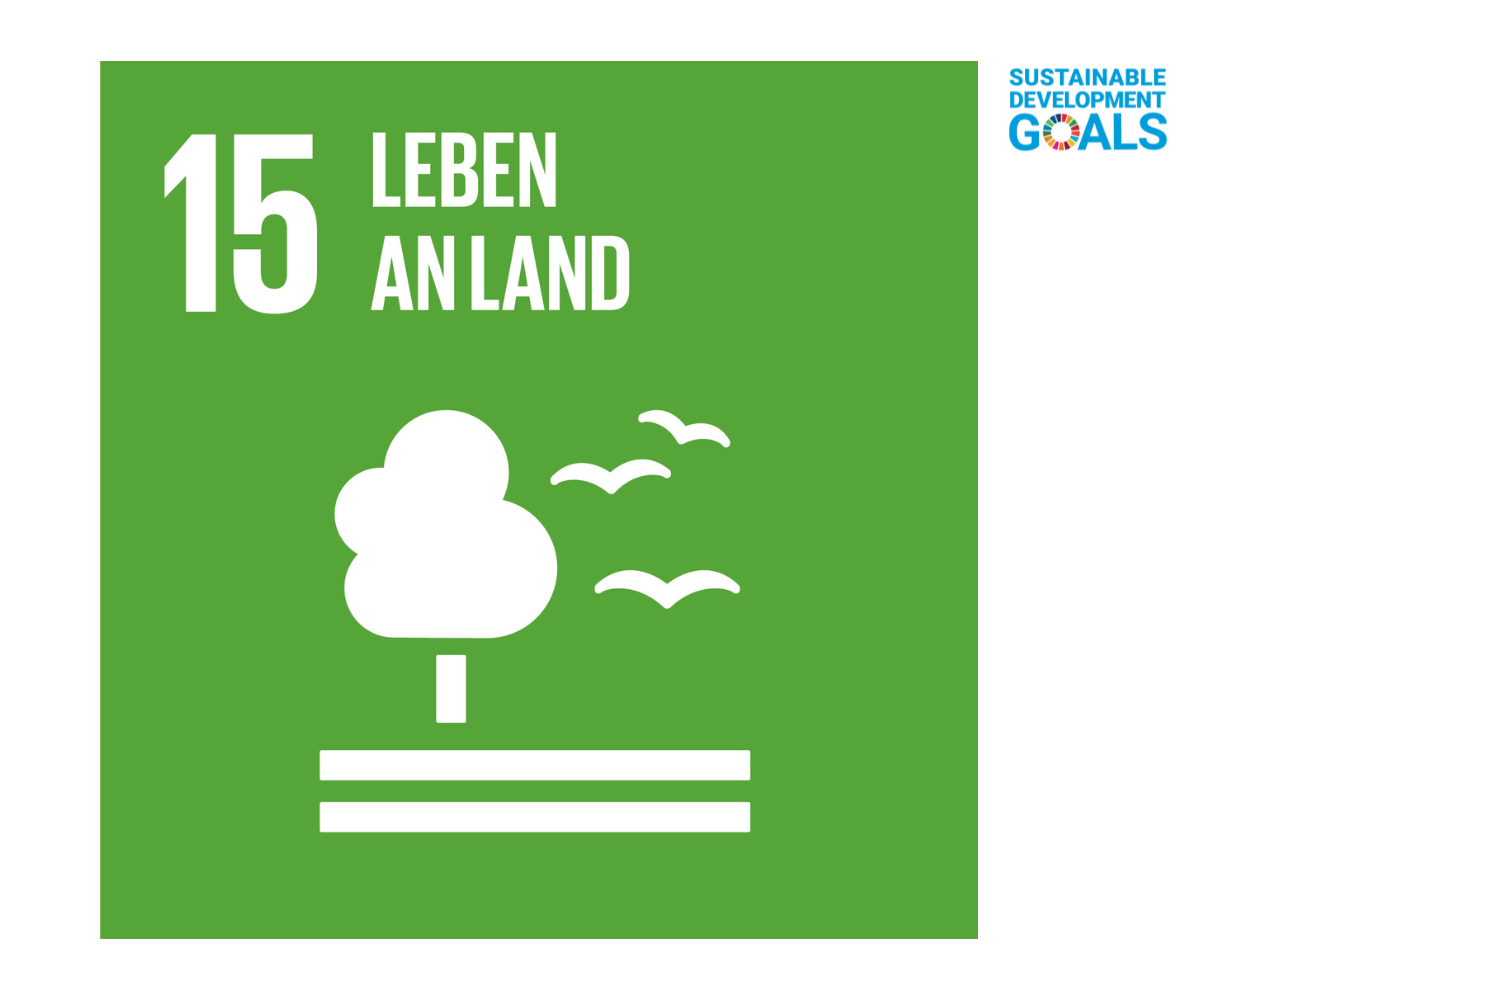 Leben an Land - SDG15